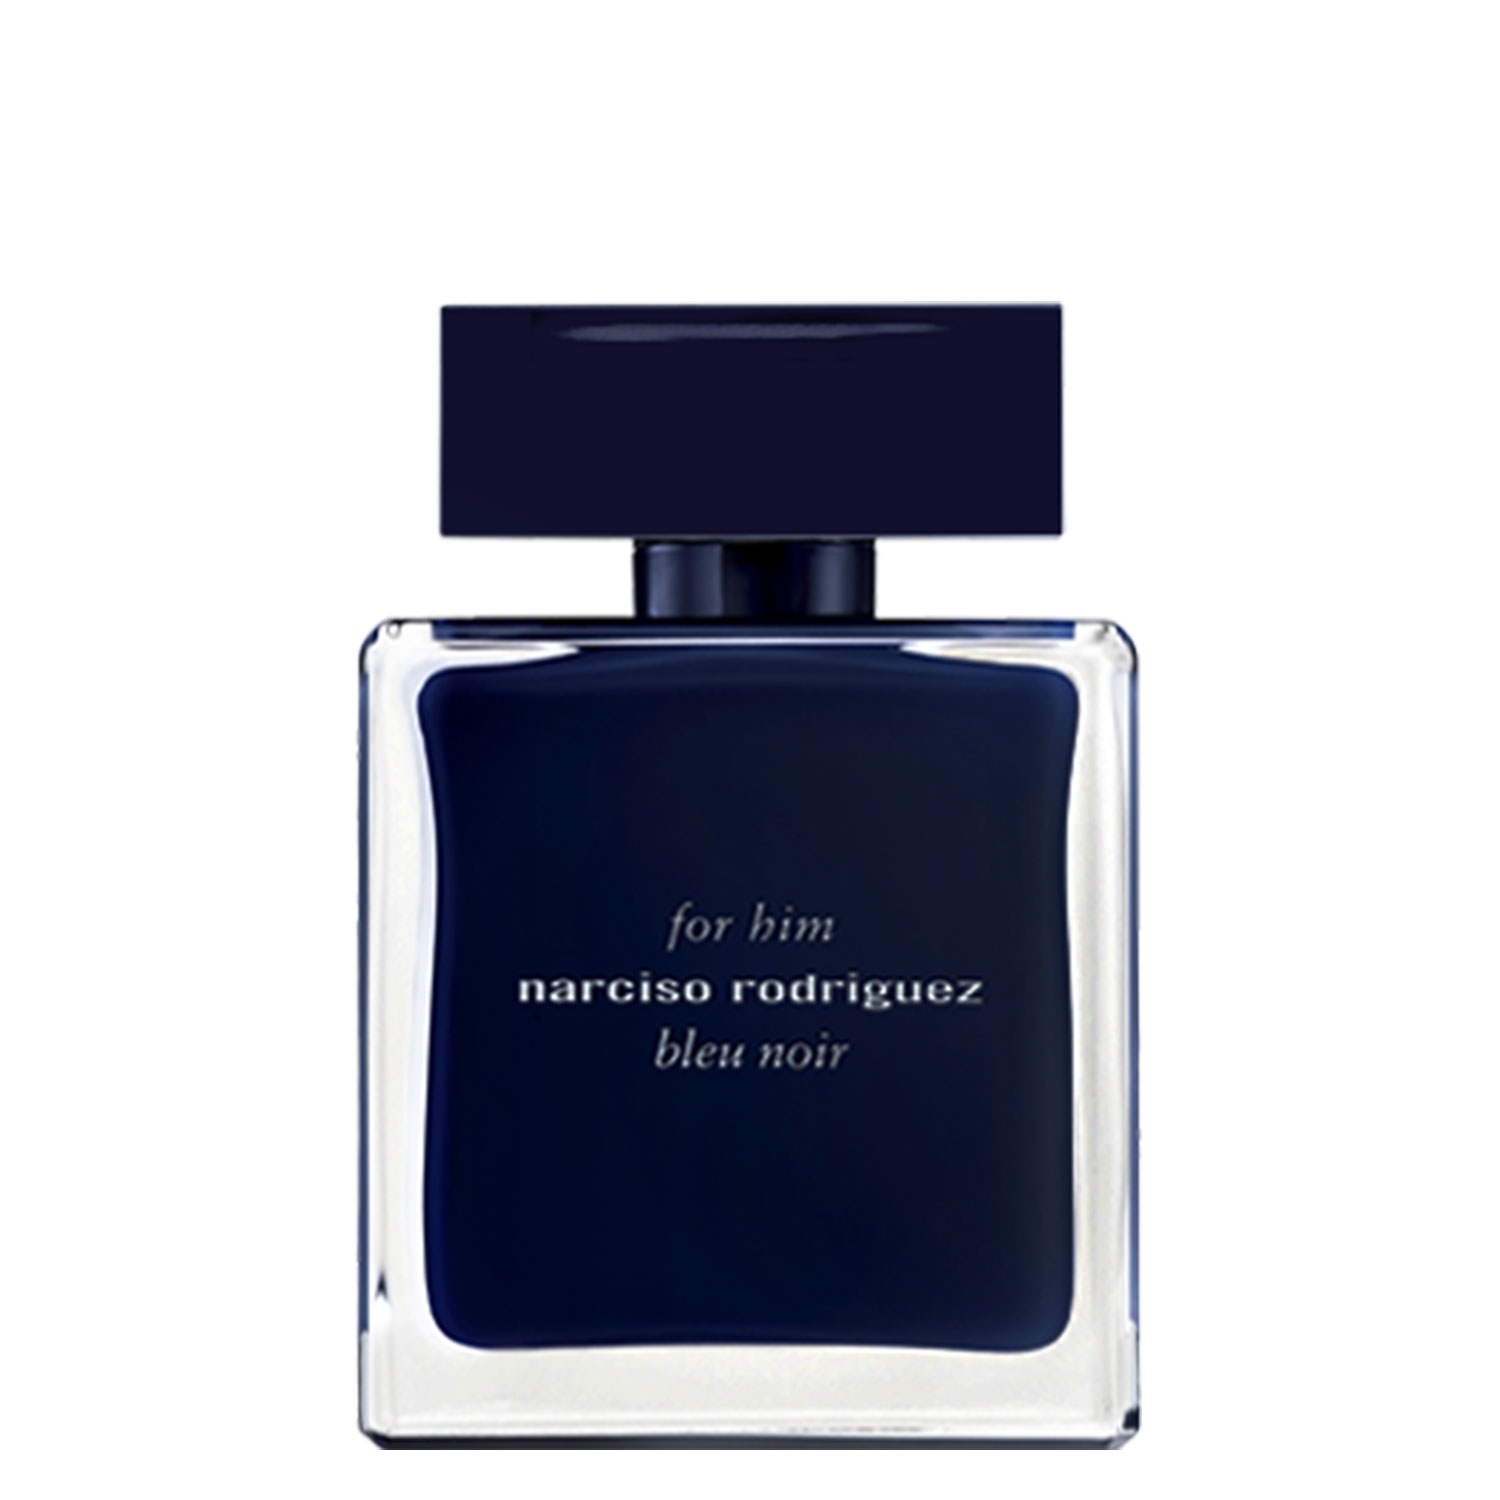 Product image from Narciso - For Him Bleu Noir Eau de Toilette